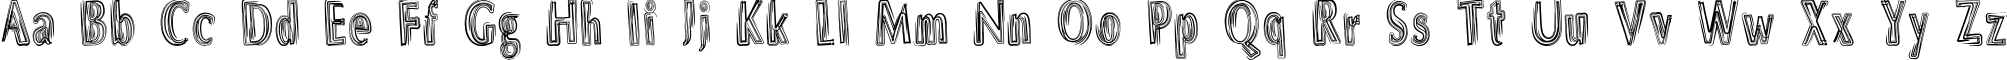 Пример написания английского алфавита шрифтом DS Brushes Normal